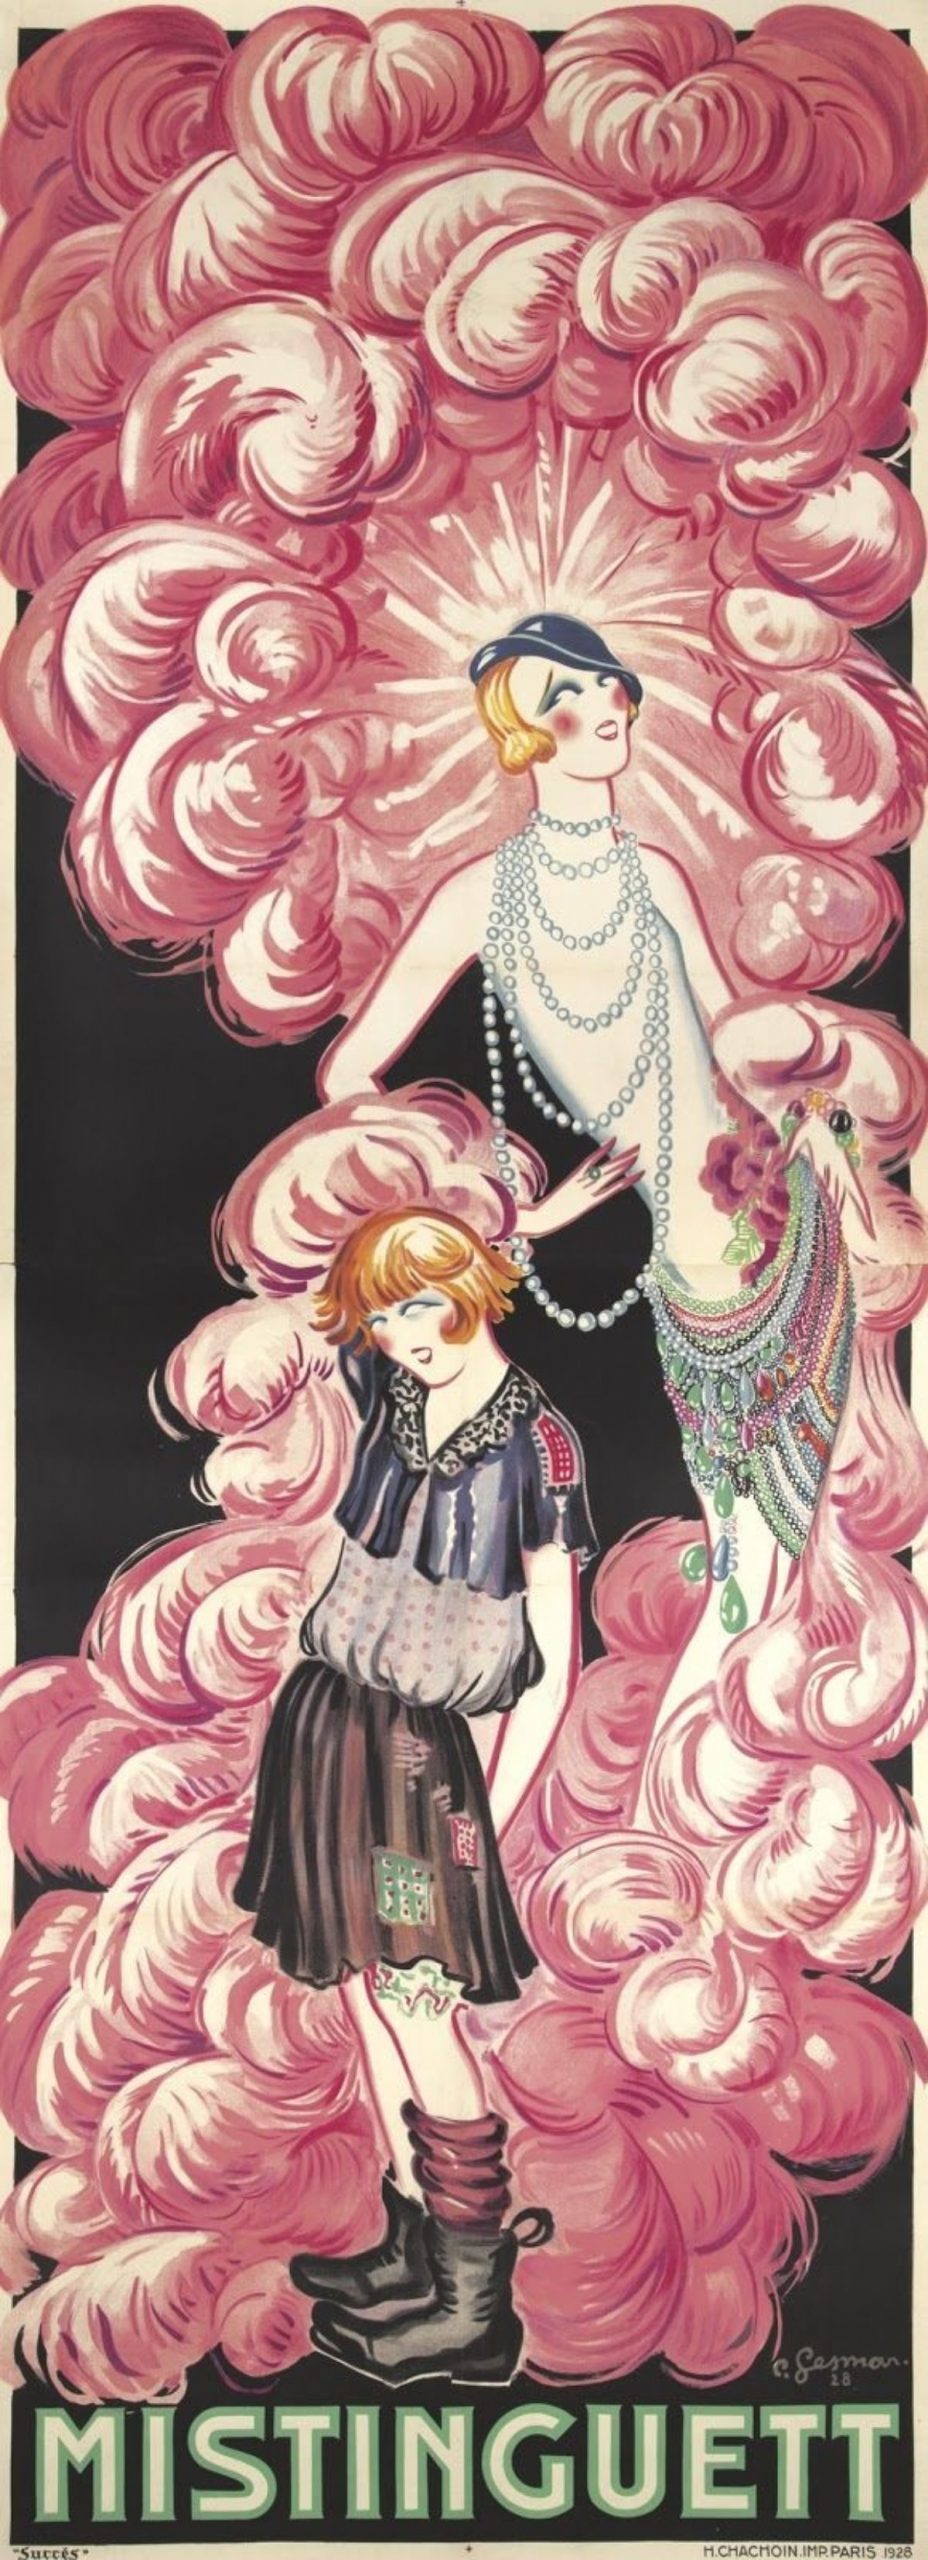 Pinterest-Gesmar-1928